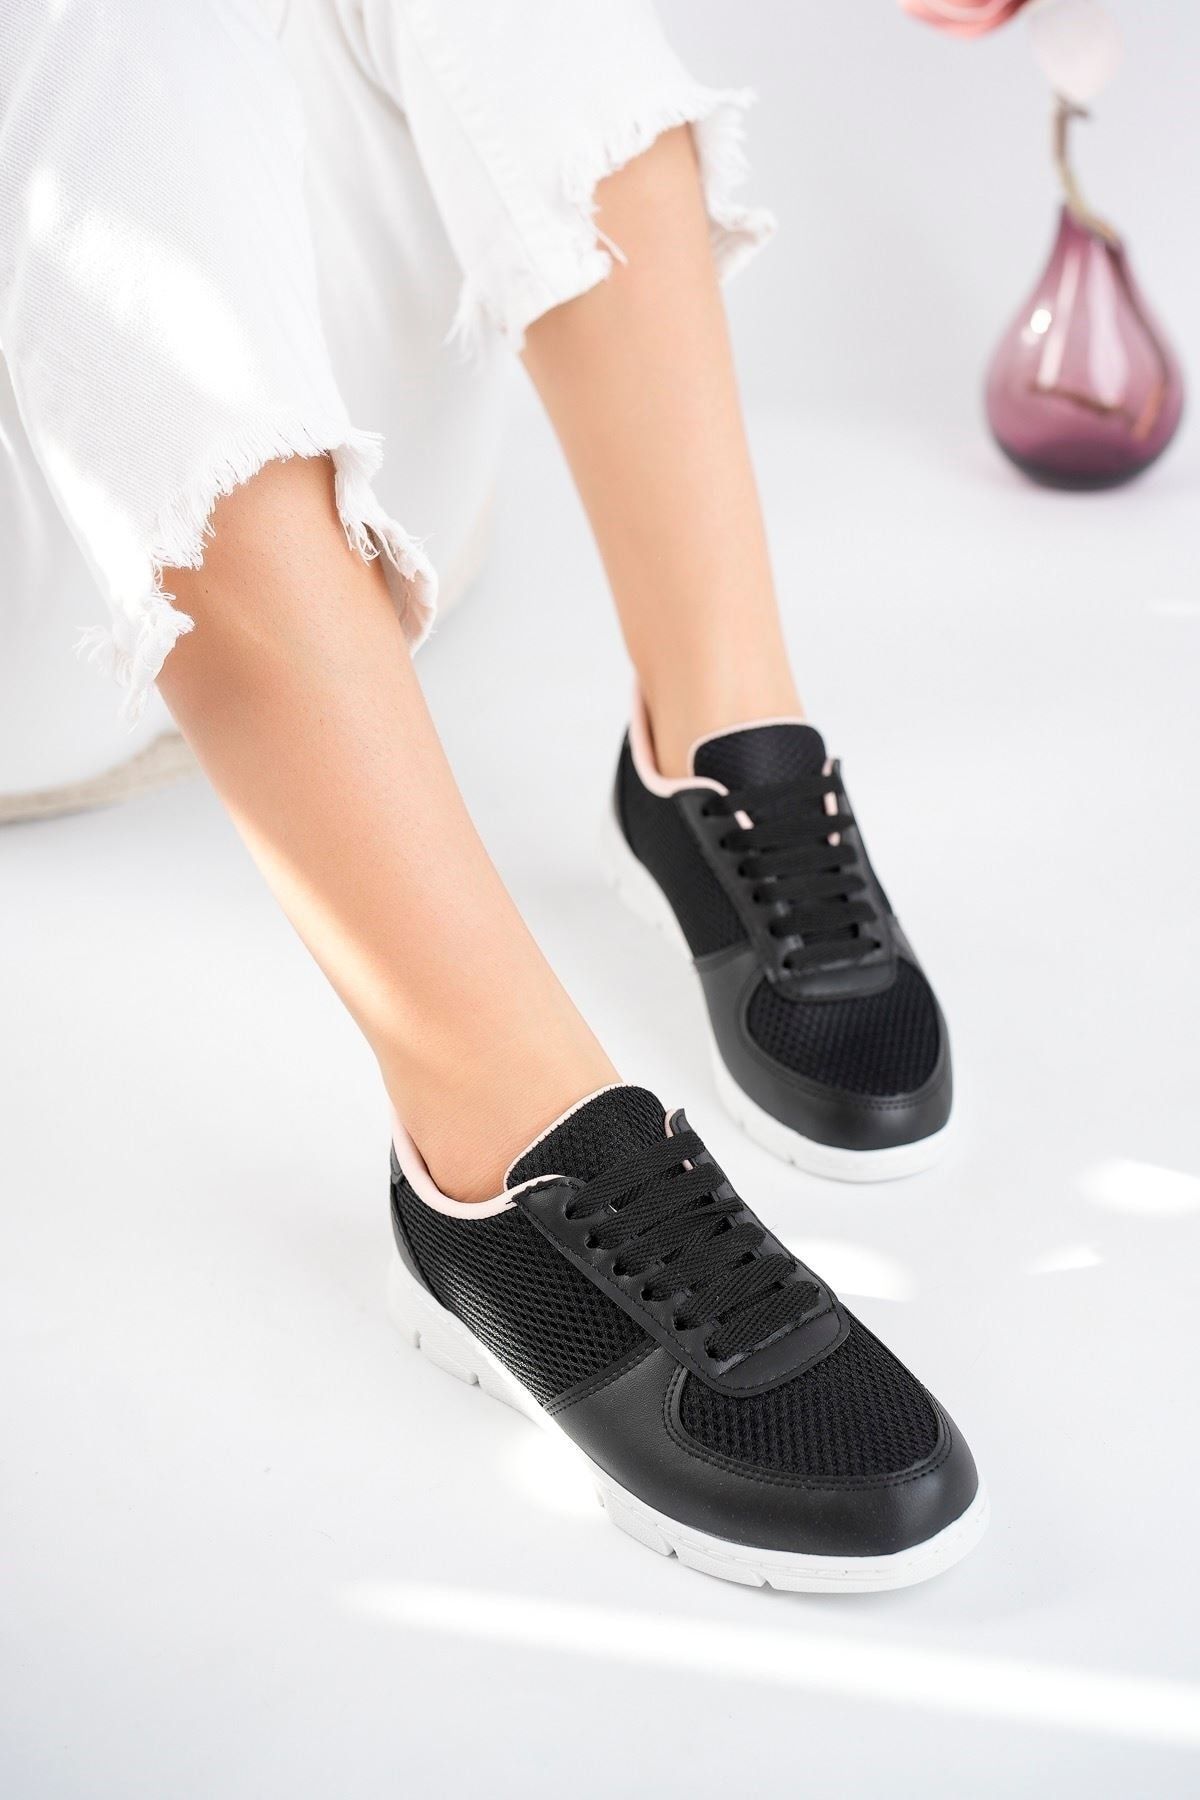 STOCON  Kadın Bağcıklı Rahat Spor Ayakkabı Sneaker